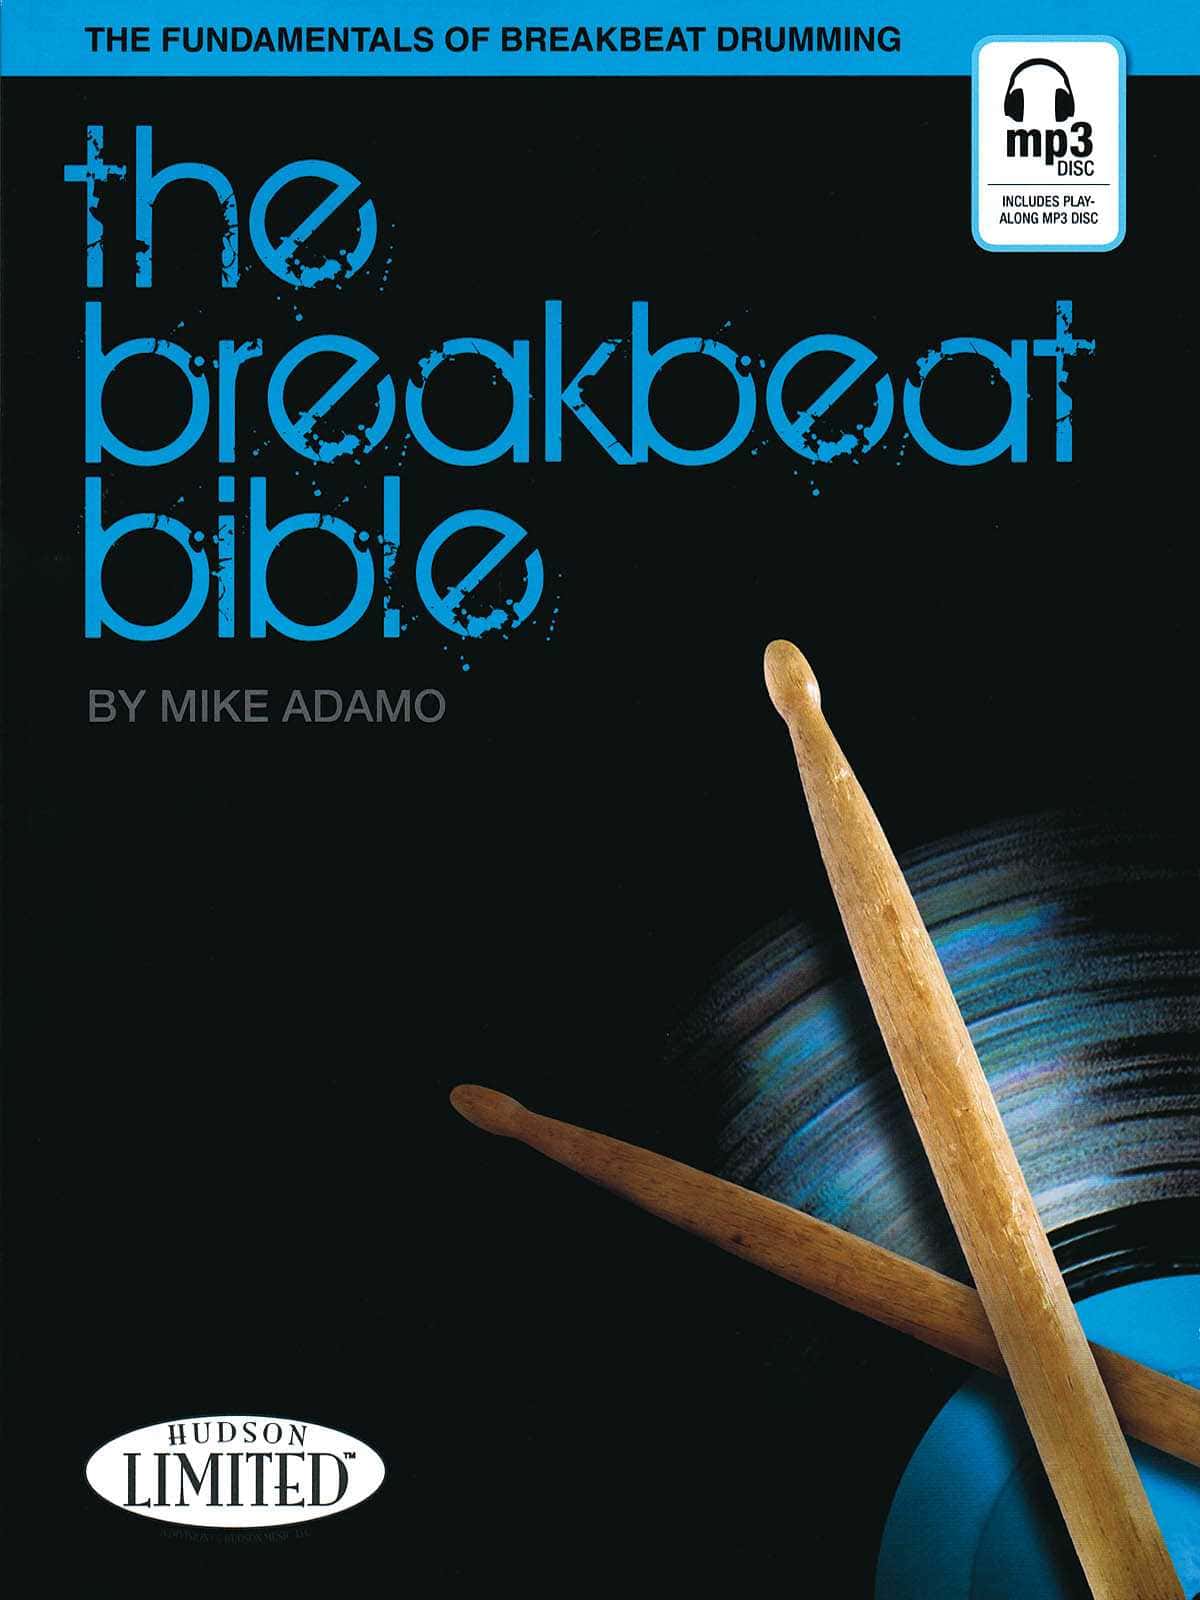 The Breakbeat Bible by Mike Adamo